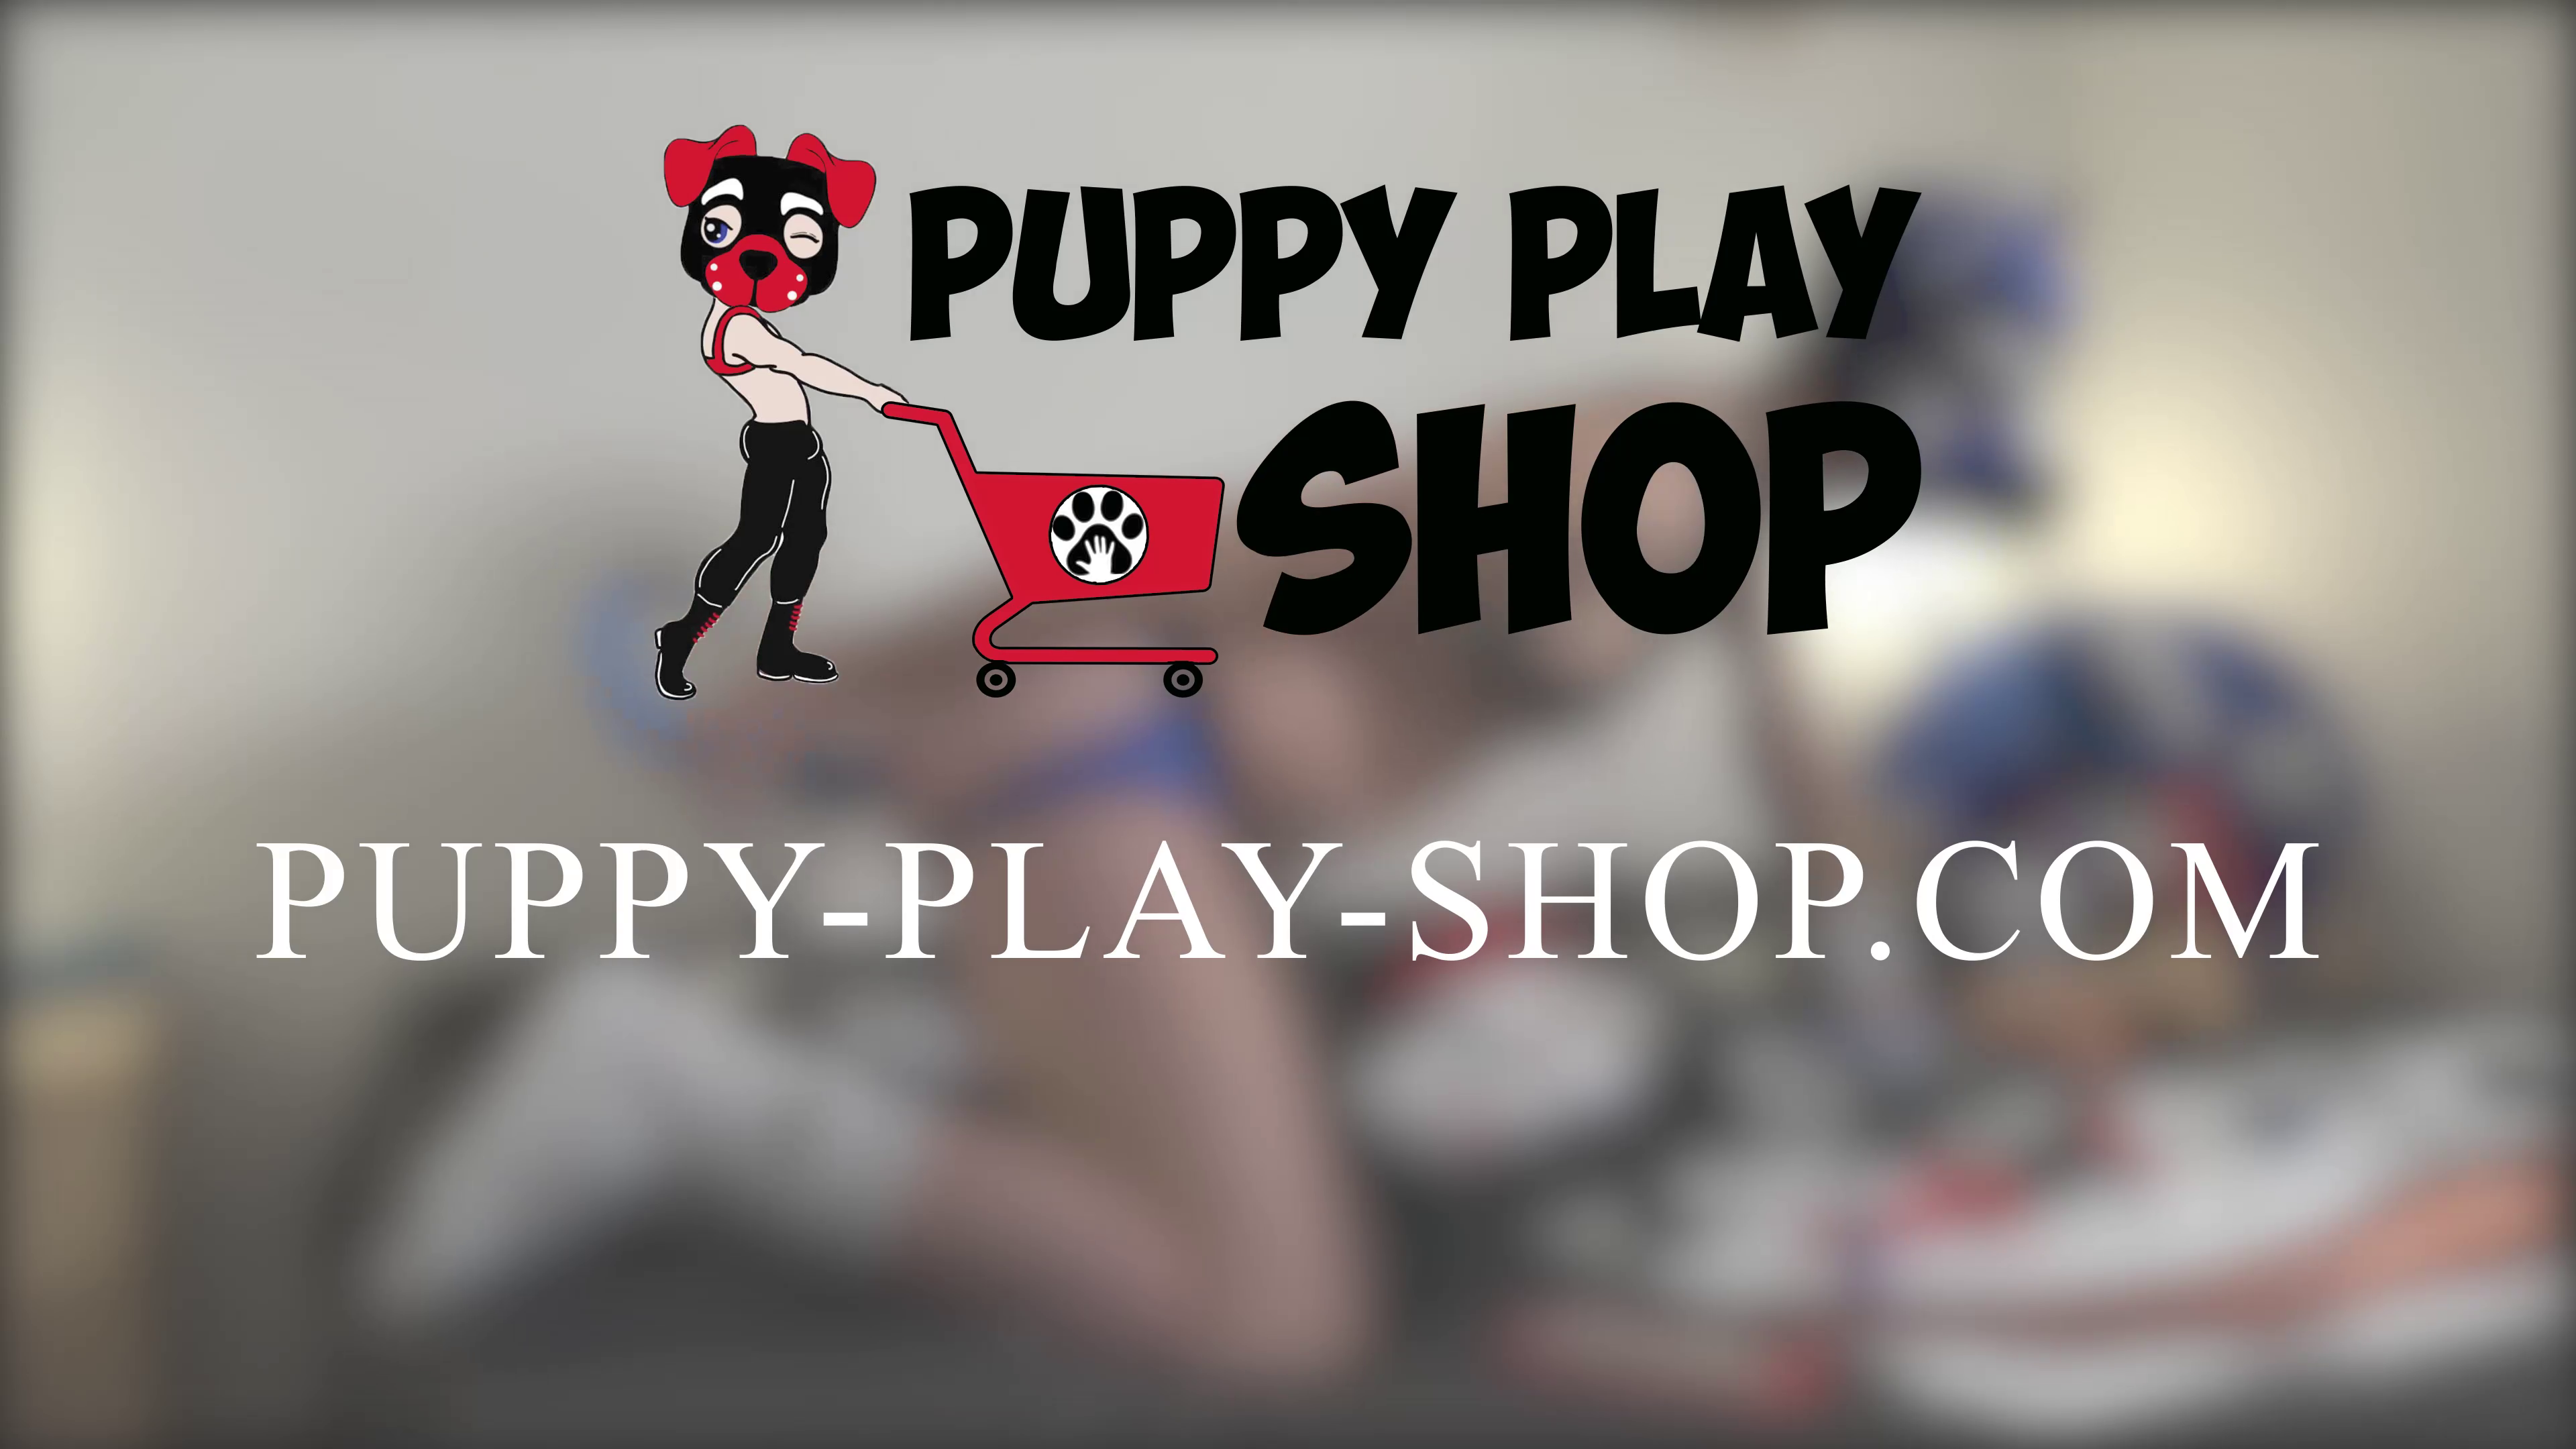 Publicité Puppy Play Shop